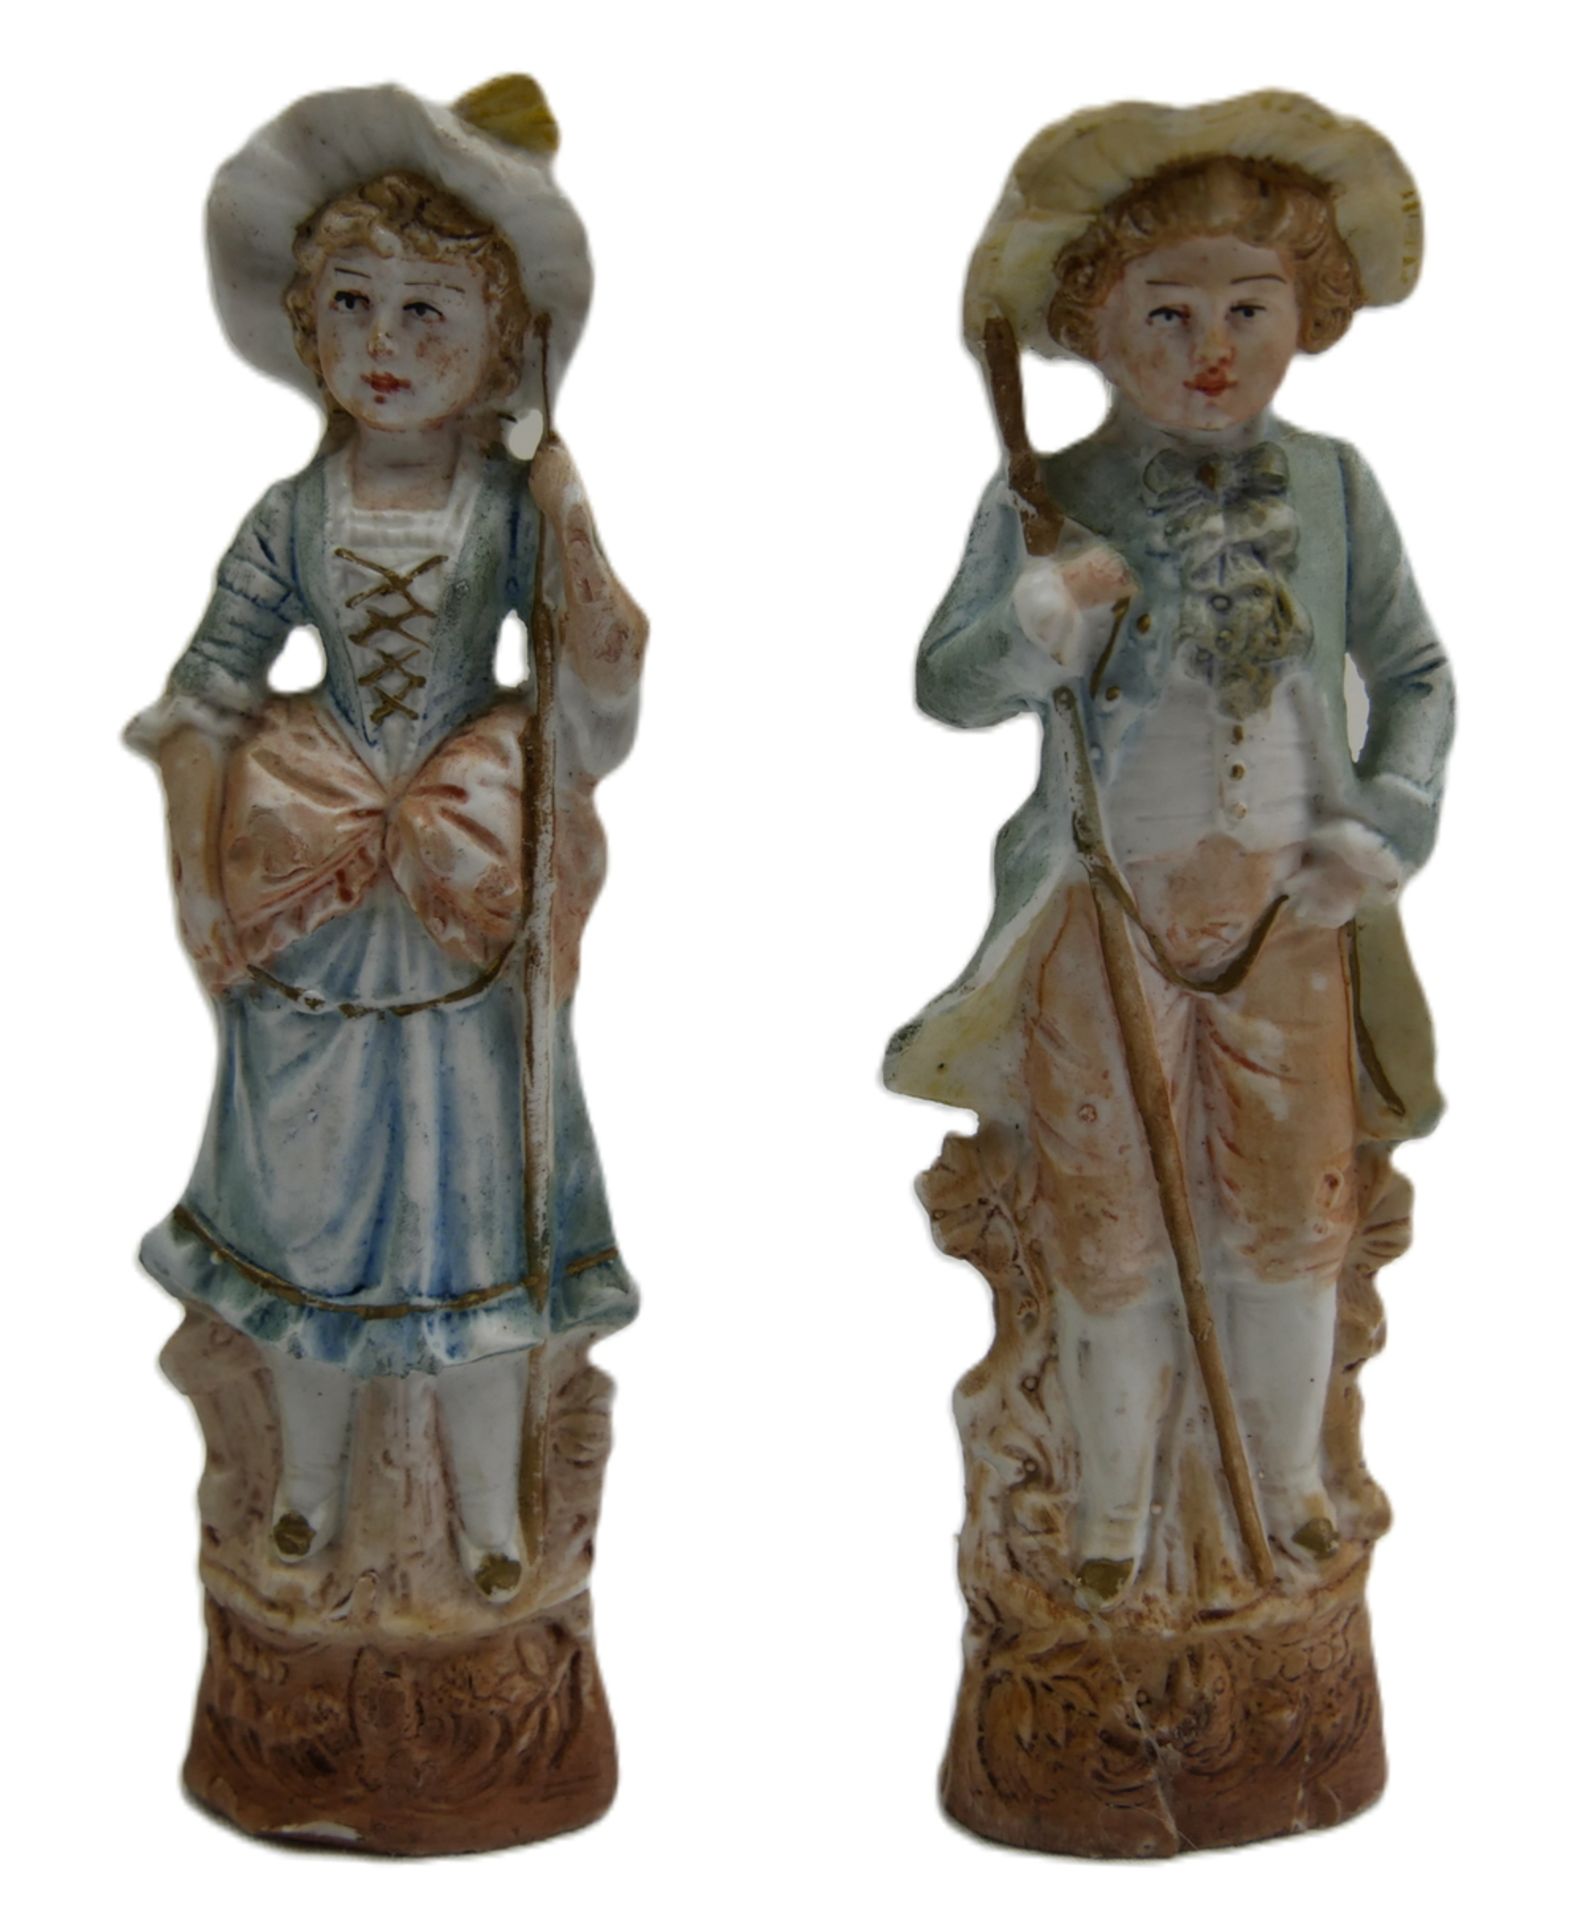 2 antike Bisquit Porzellanfiguren, berieben, der Knabe wurde am Sockel geklebt, Chips vorhanden.